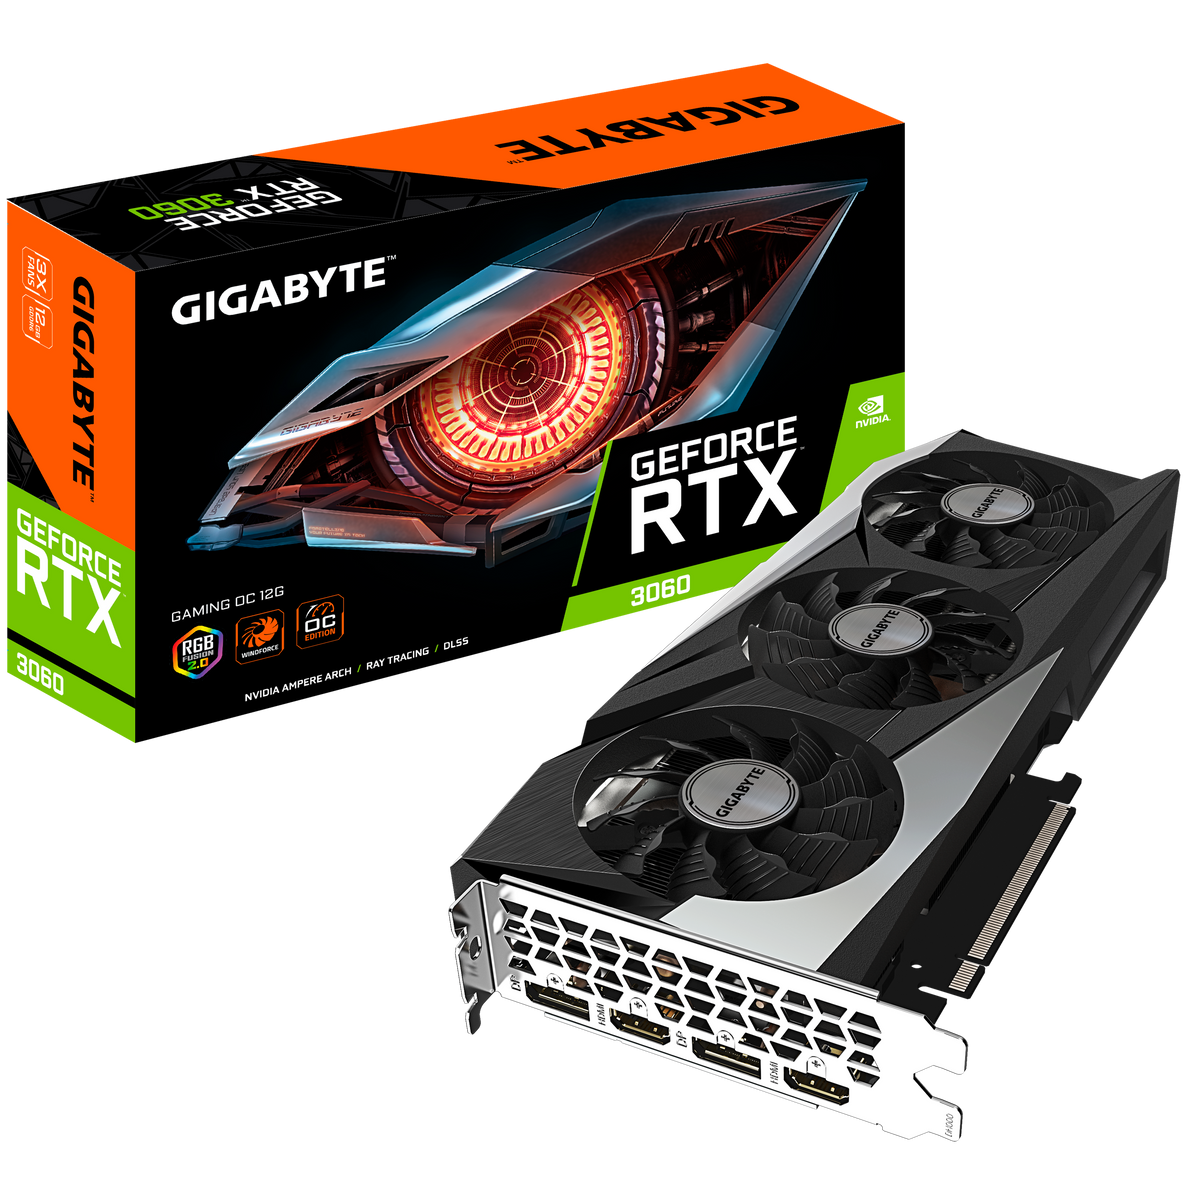 Gigabyte GeForce RTX 3060 GAMING OC 12G 3X